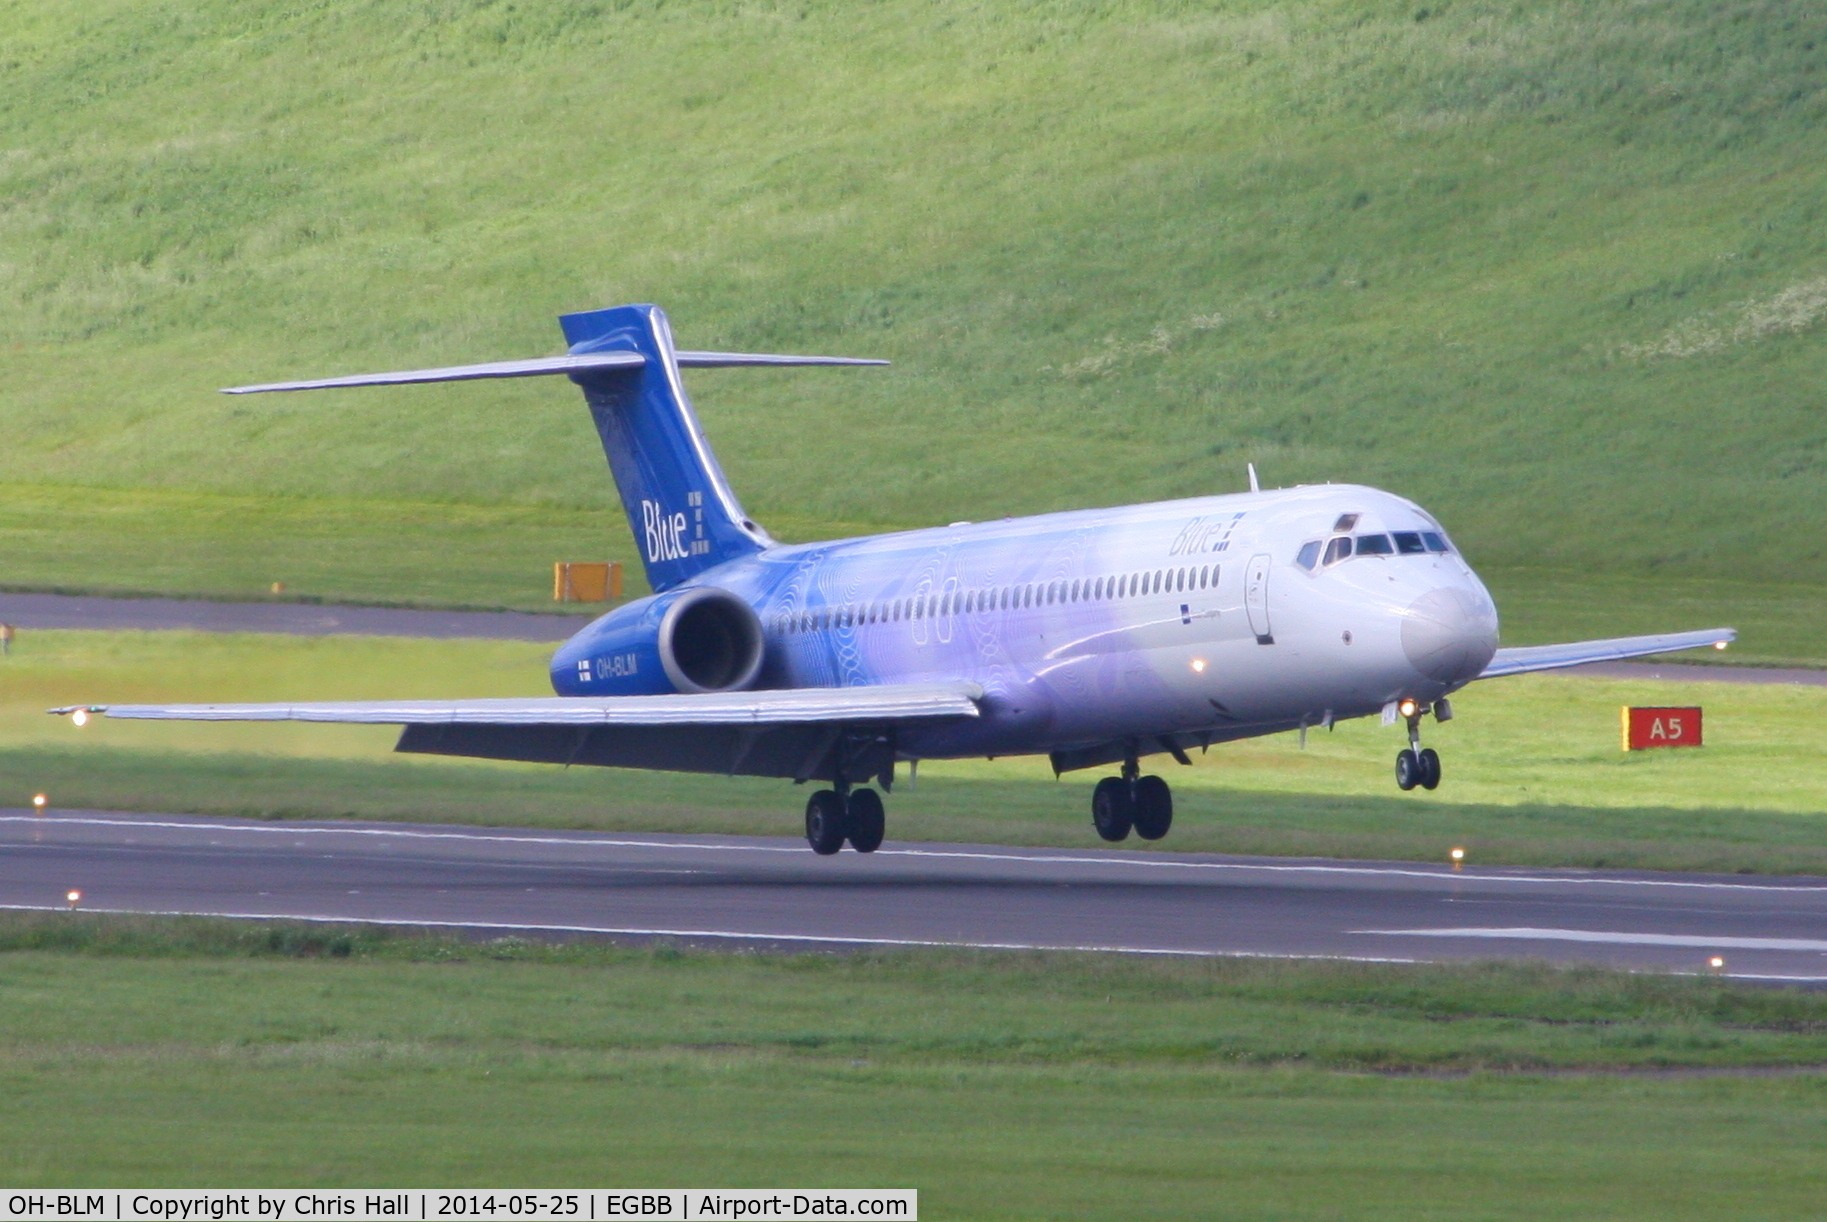 OH-BLM, 2001 Boeing 717-23S C/N 55066, Blue1